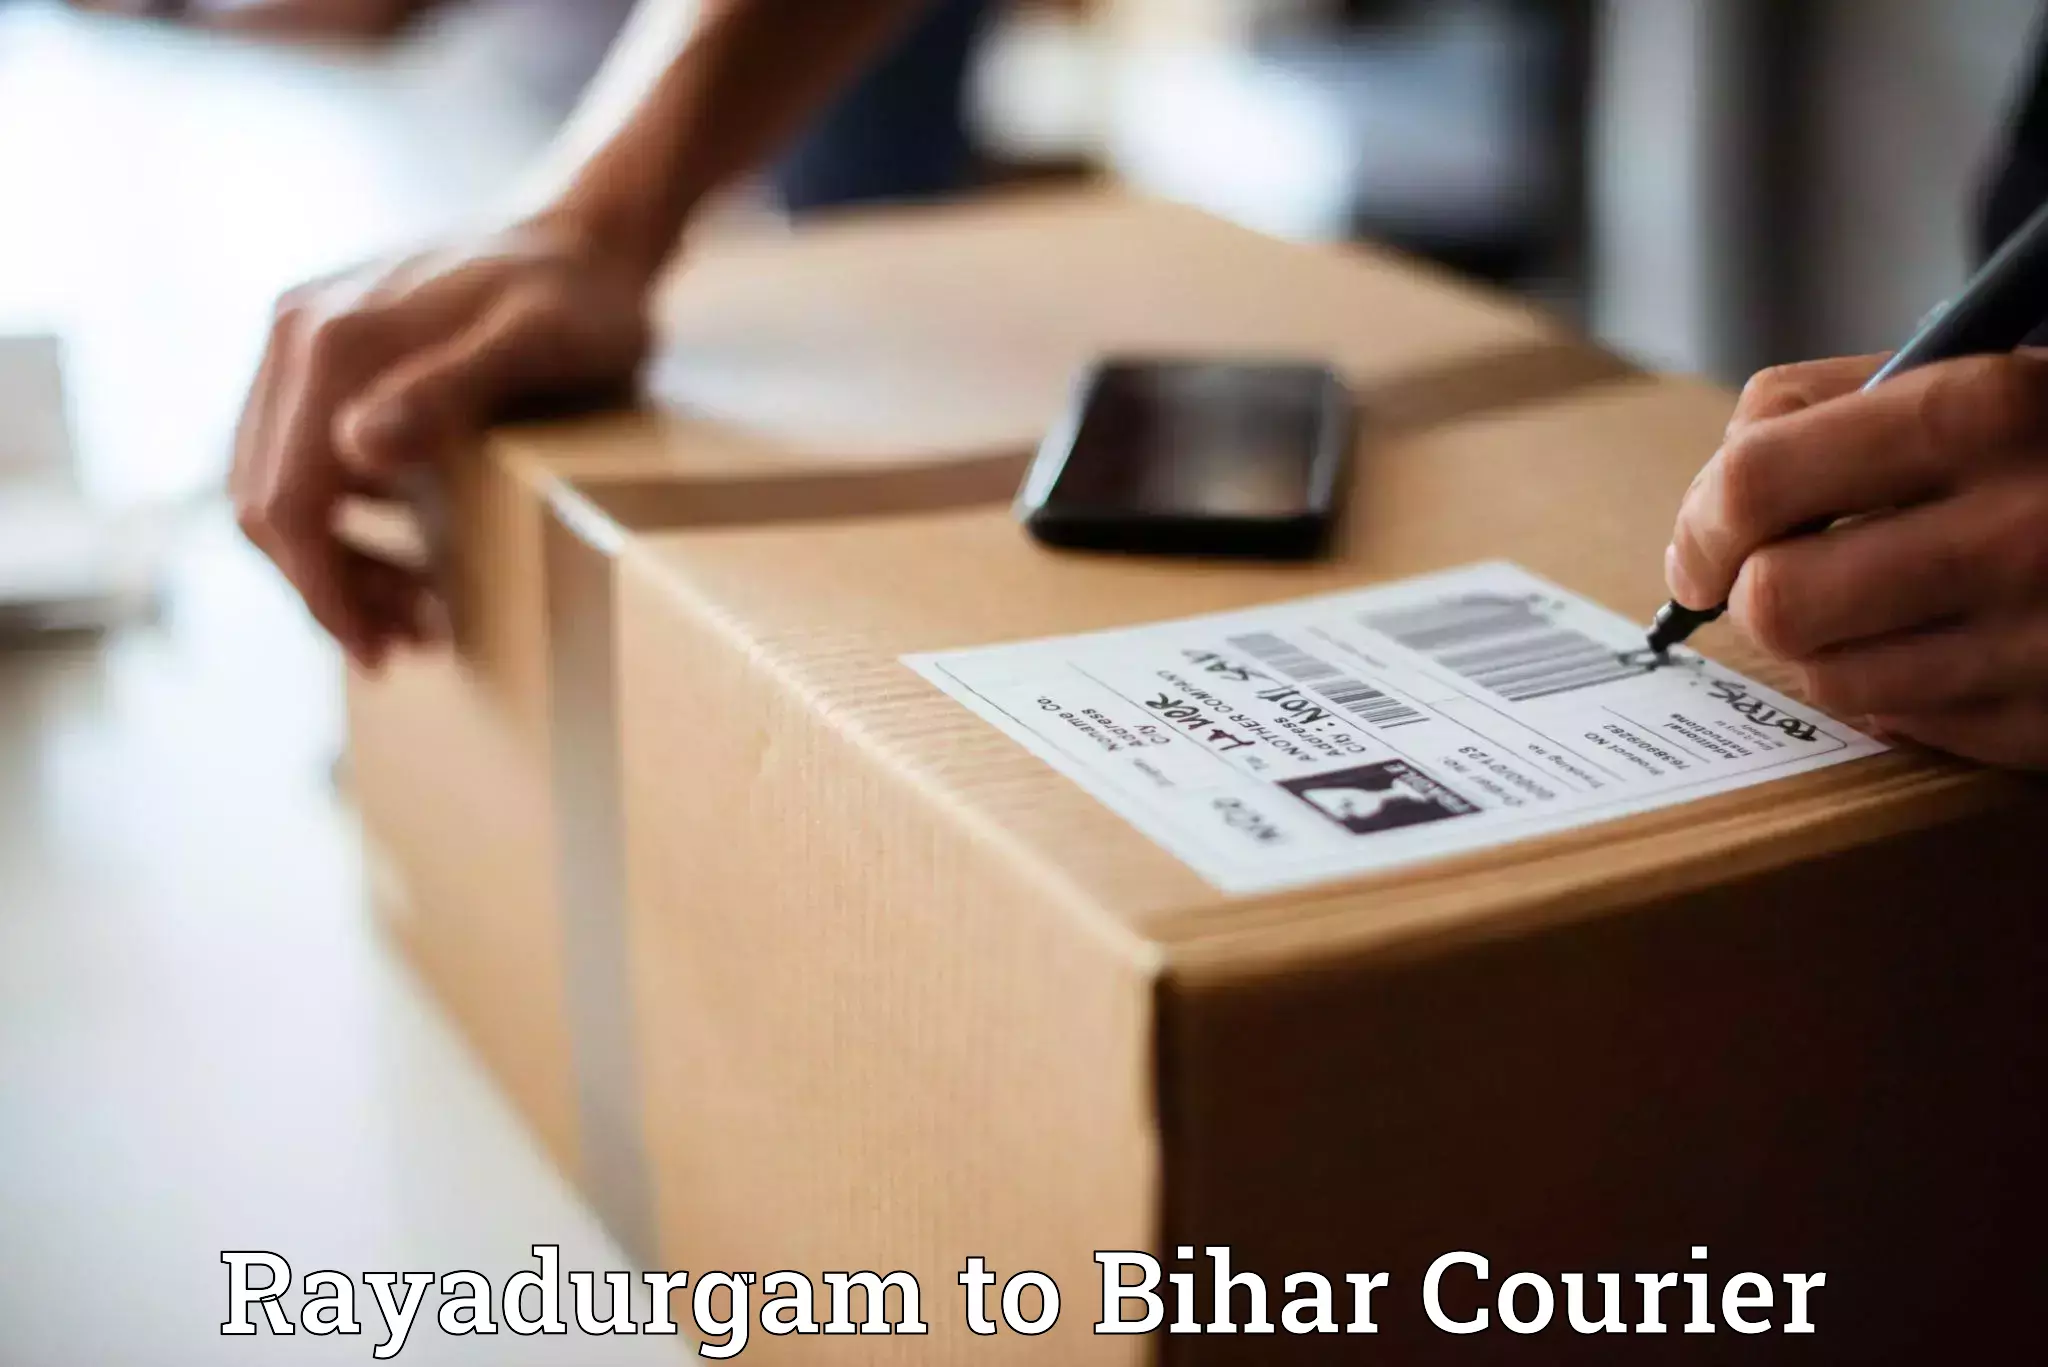 Affordable parcel service Rayadurgam to Bikramganj